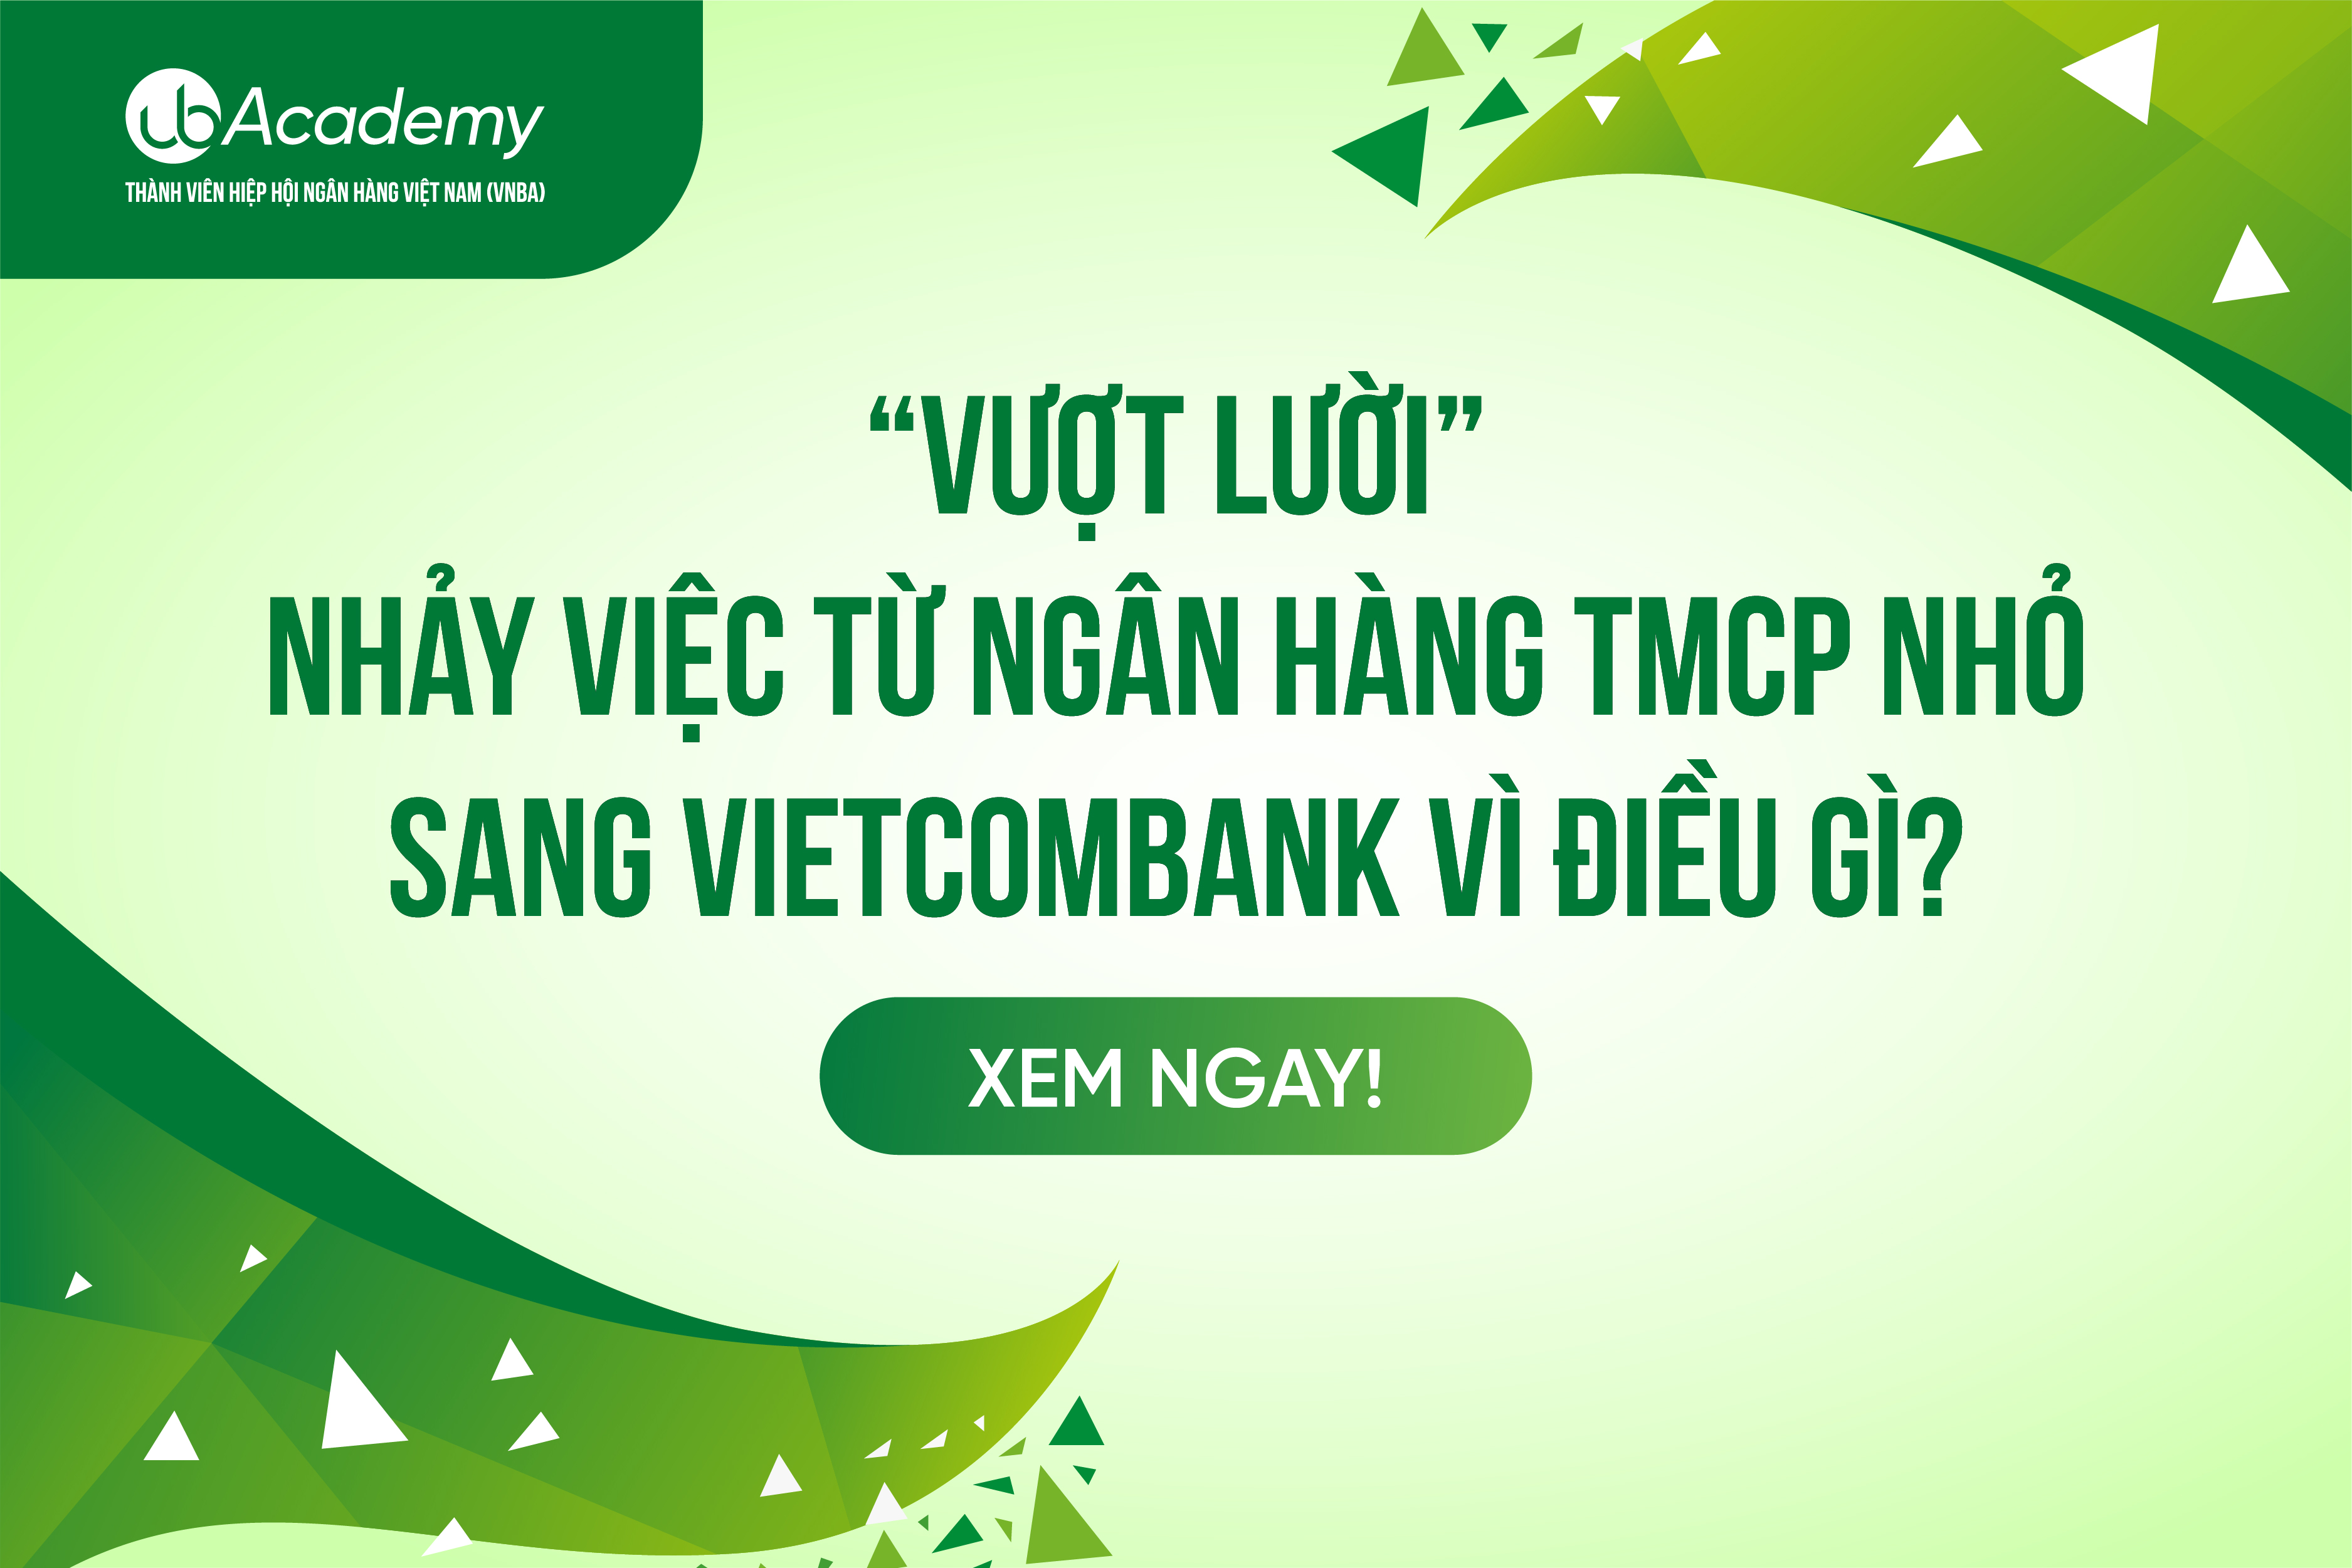 “Vượt lười” nhảy việc từ ngân hàng TMCP nhỏ sang Vietcombank vì điều gì?